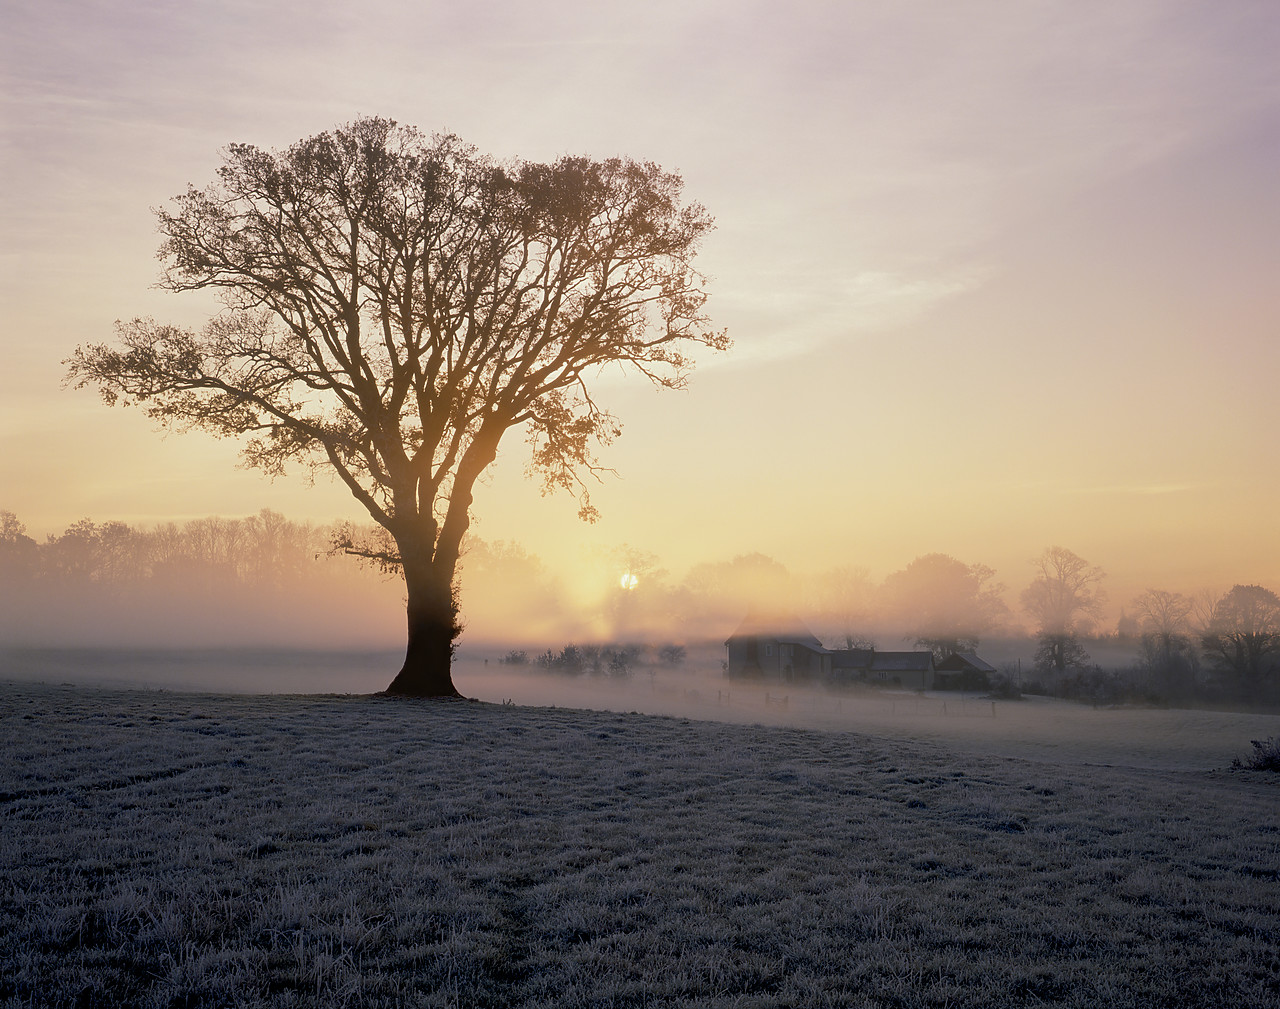 #892591-2 - Misty Sunrise over Farm House, Norfolk, England